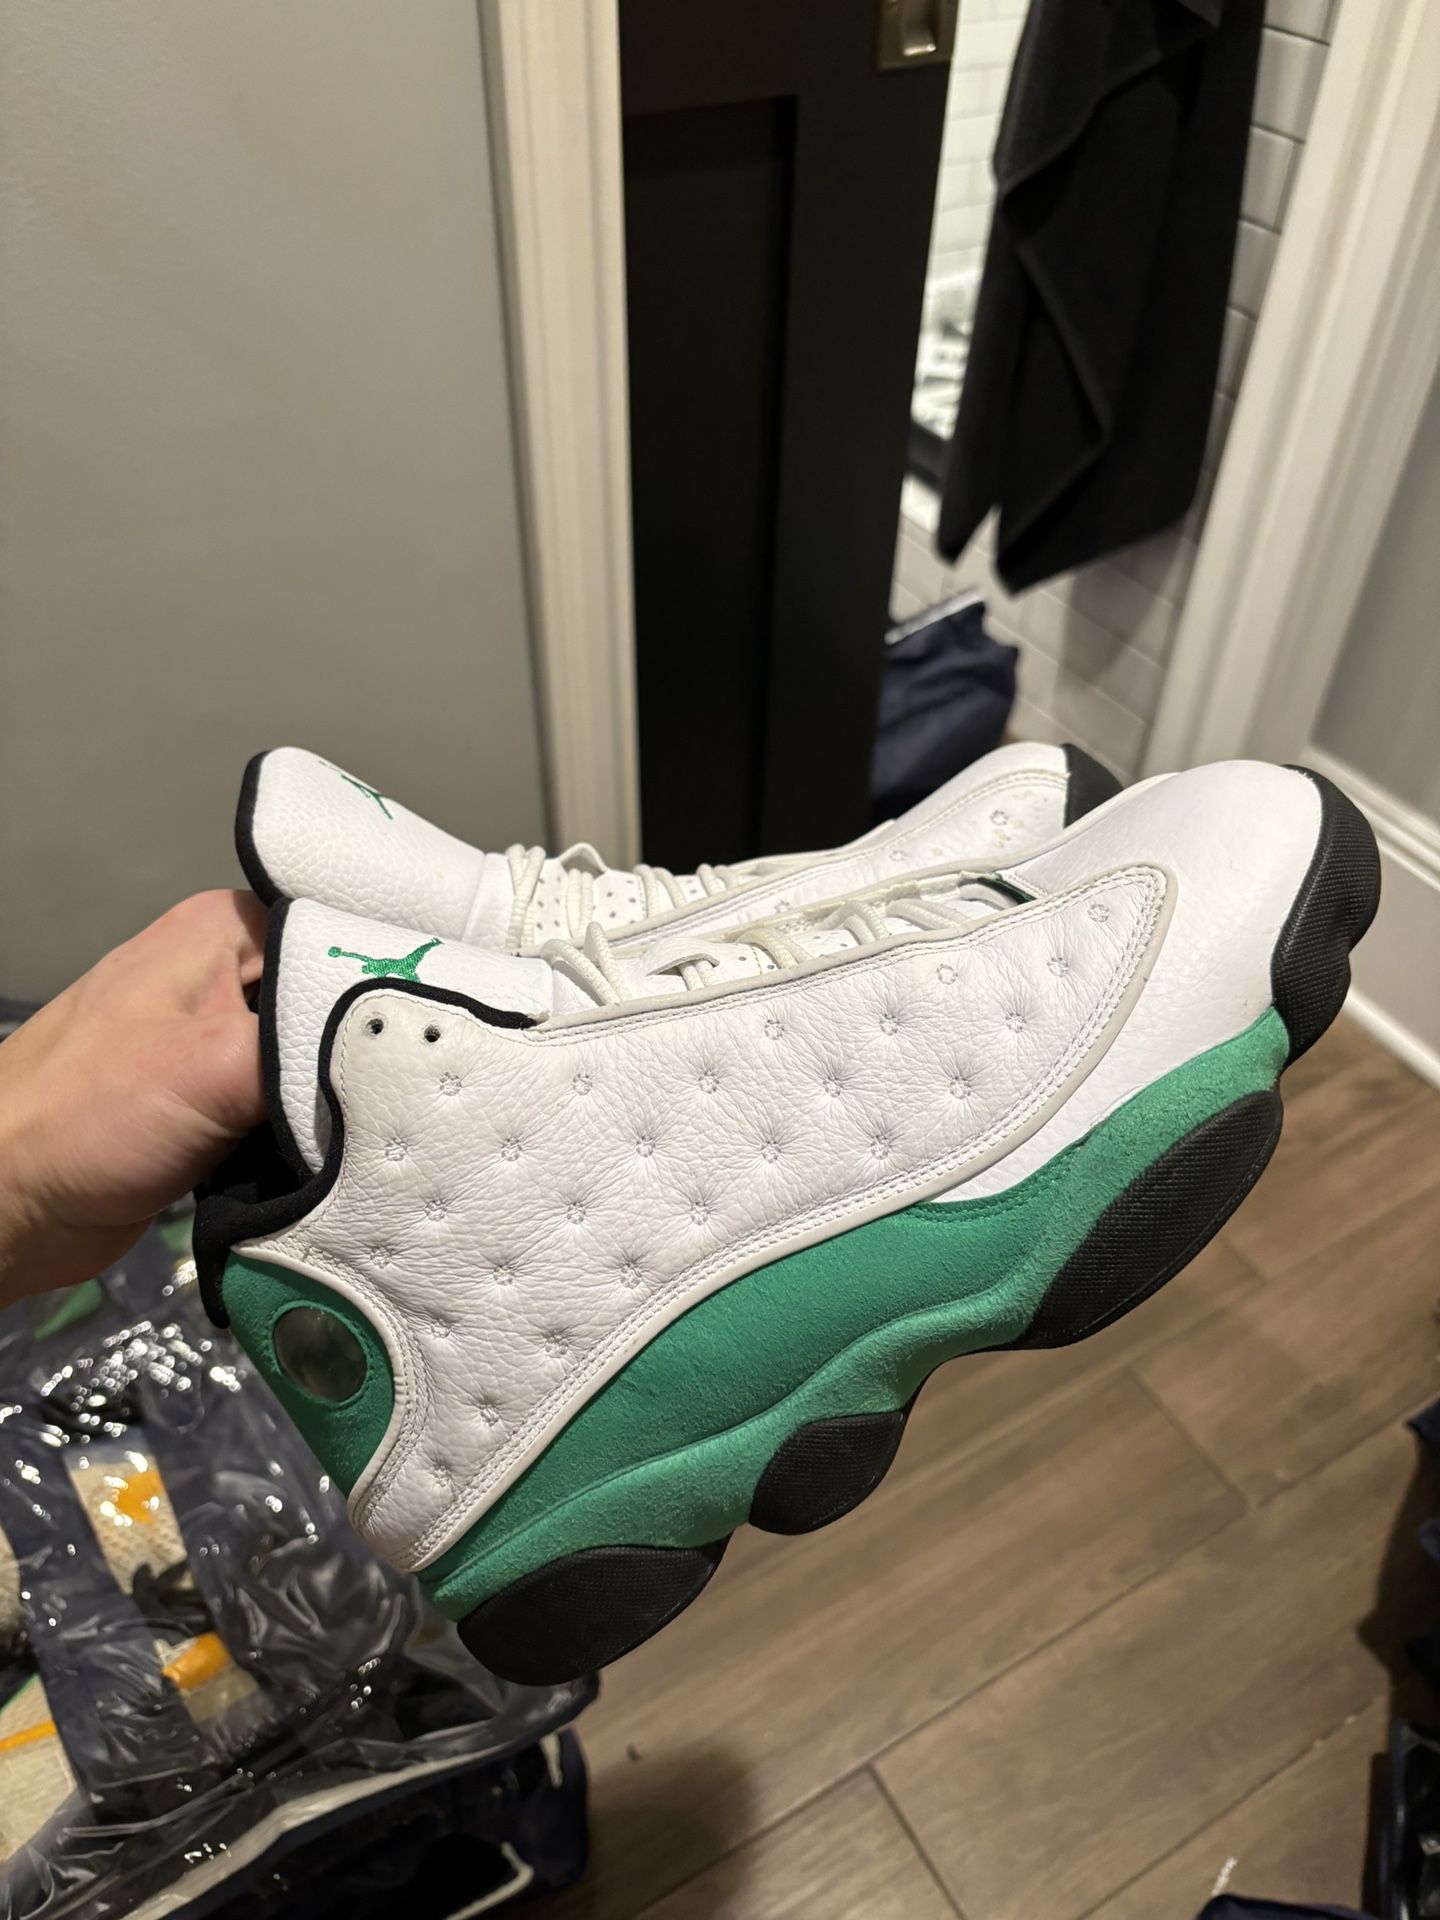 Jordan 13 Lucky Green Size 9